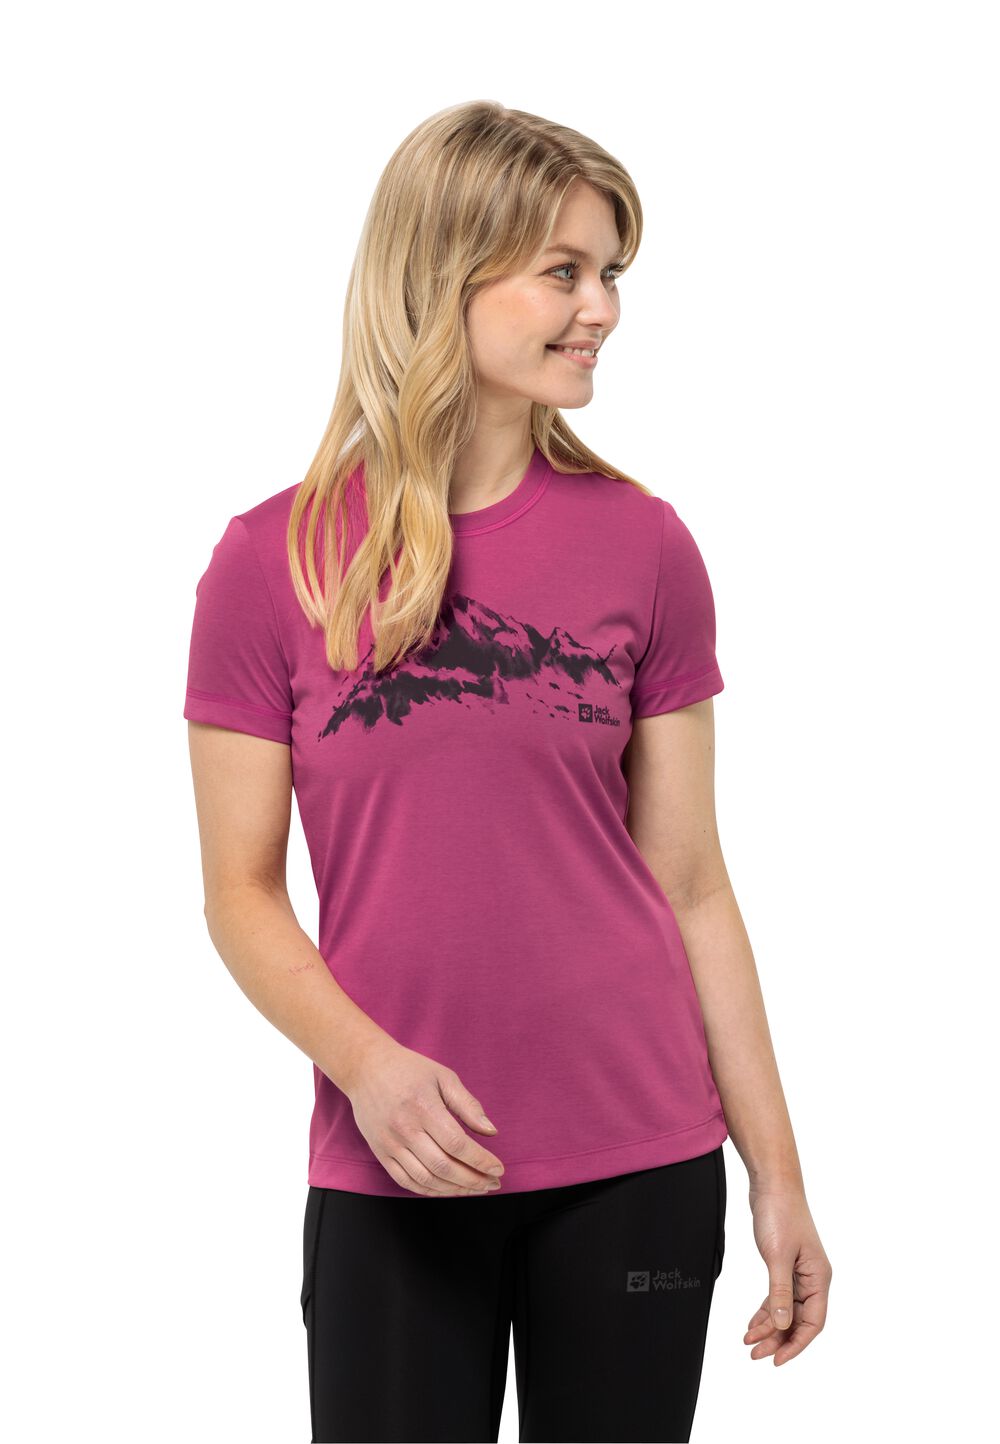 Jack Wolfskin Damen T-shirt Hiking S/S T-Shirt Women S new magenta new magenta von Jack Wolfskin